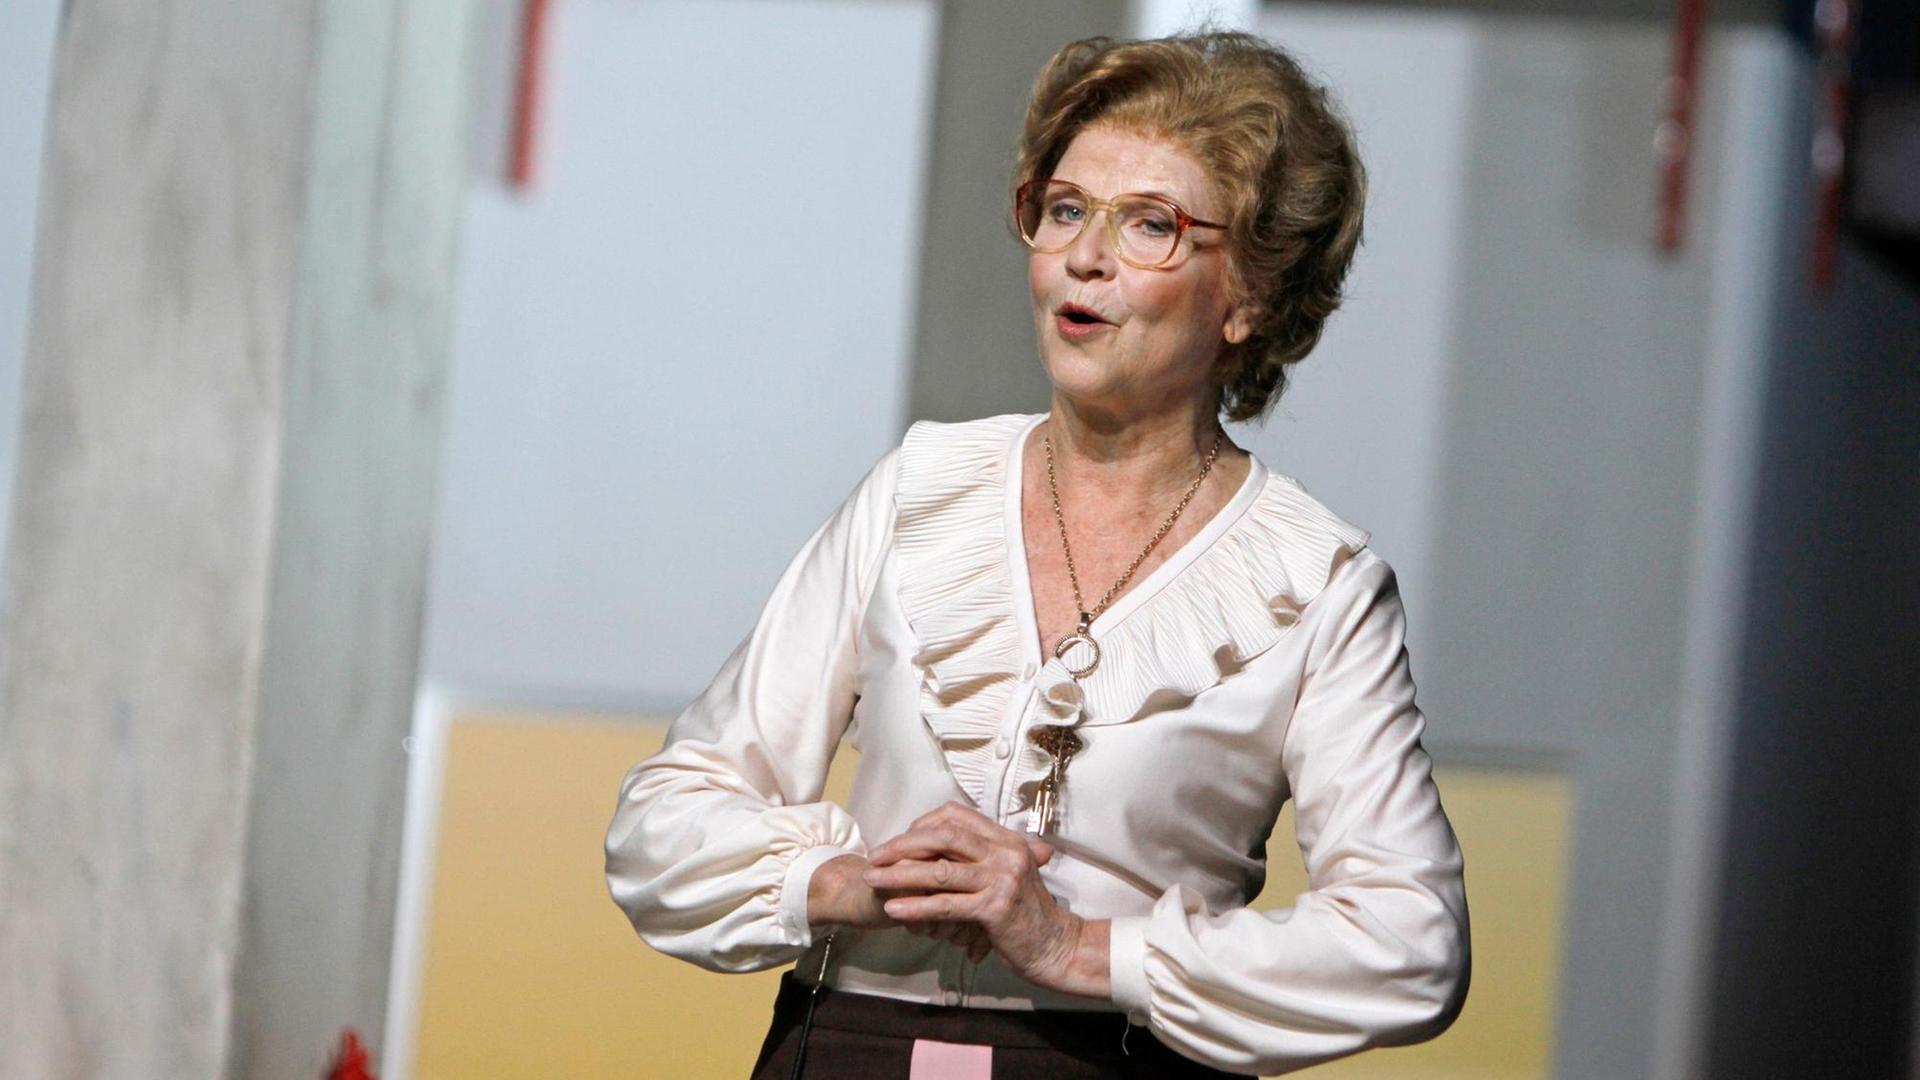 Zu sehen ist die Schauspielerin Irm Hermann, die auf einer Theaterbühne steht. Sie trägt ein Kleid und hält die Hände vor ihrem Körper.